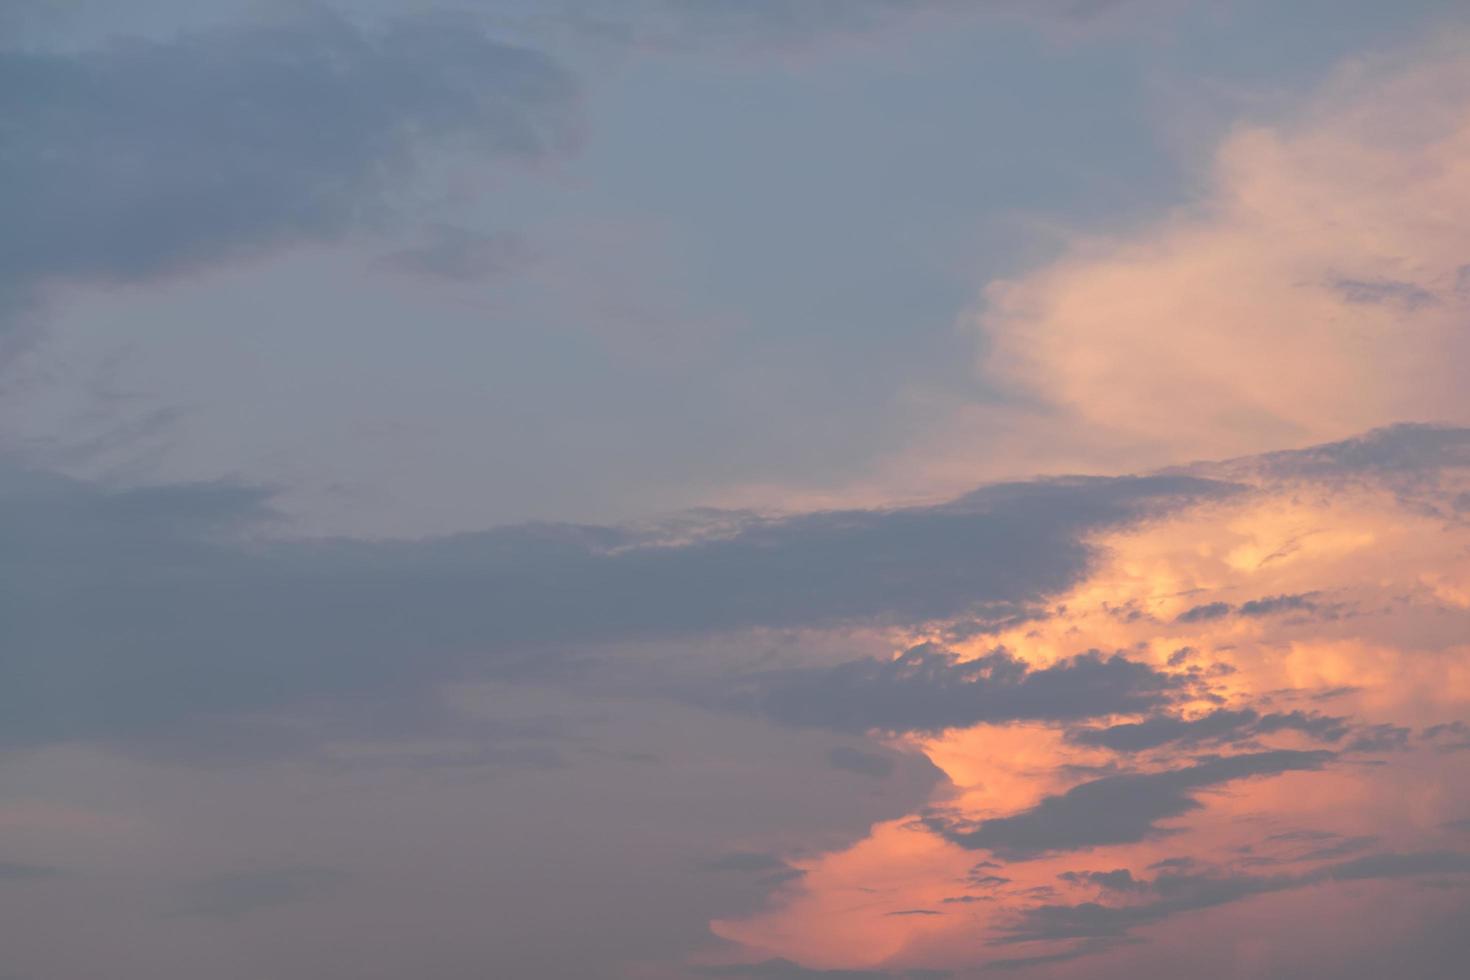 Himmel und Wolken bei Sonnenuntergang foto